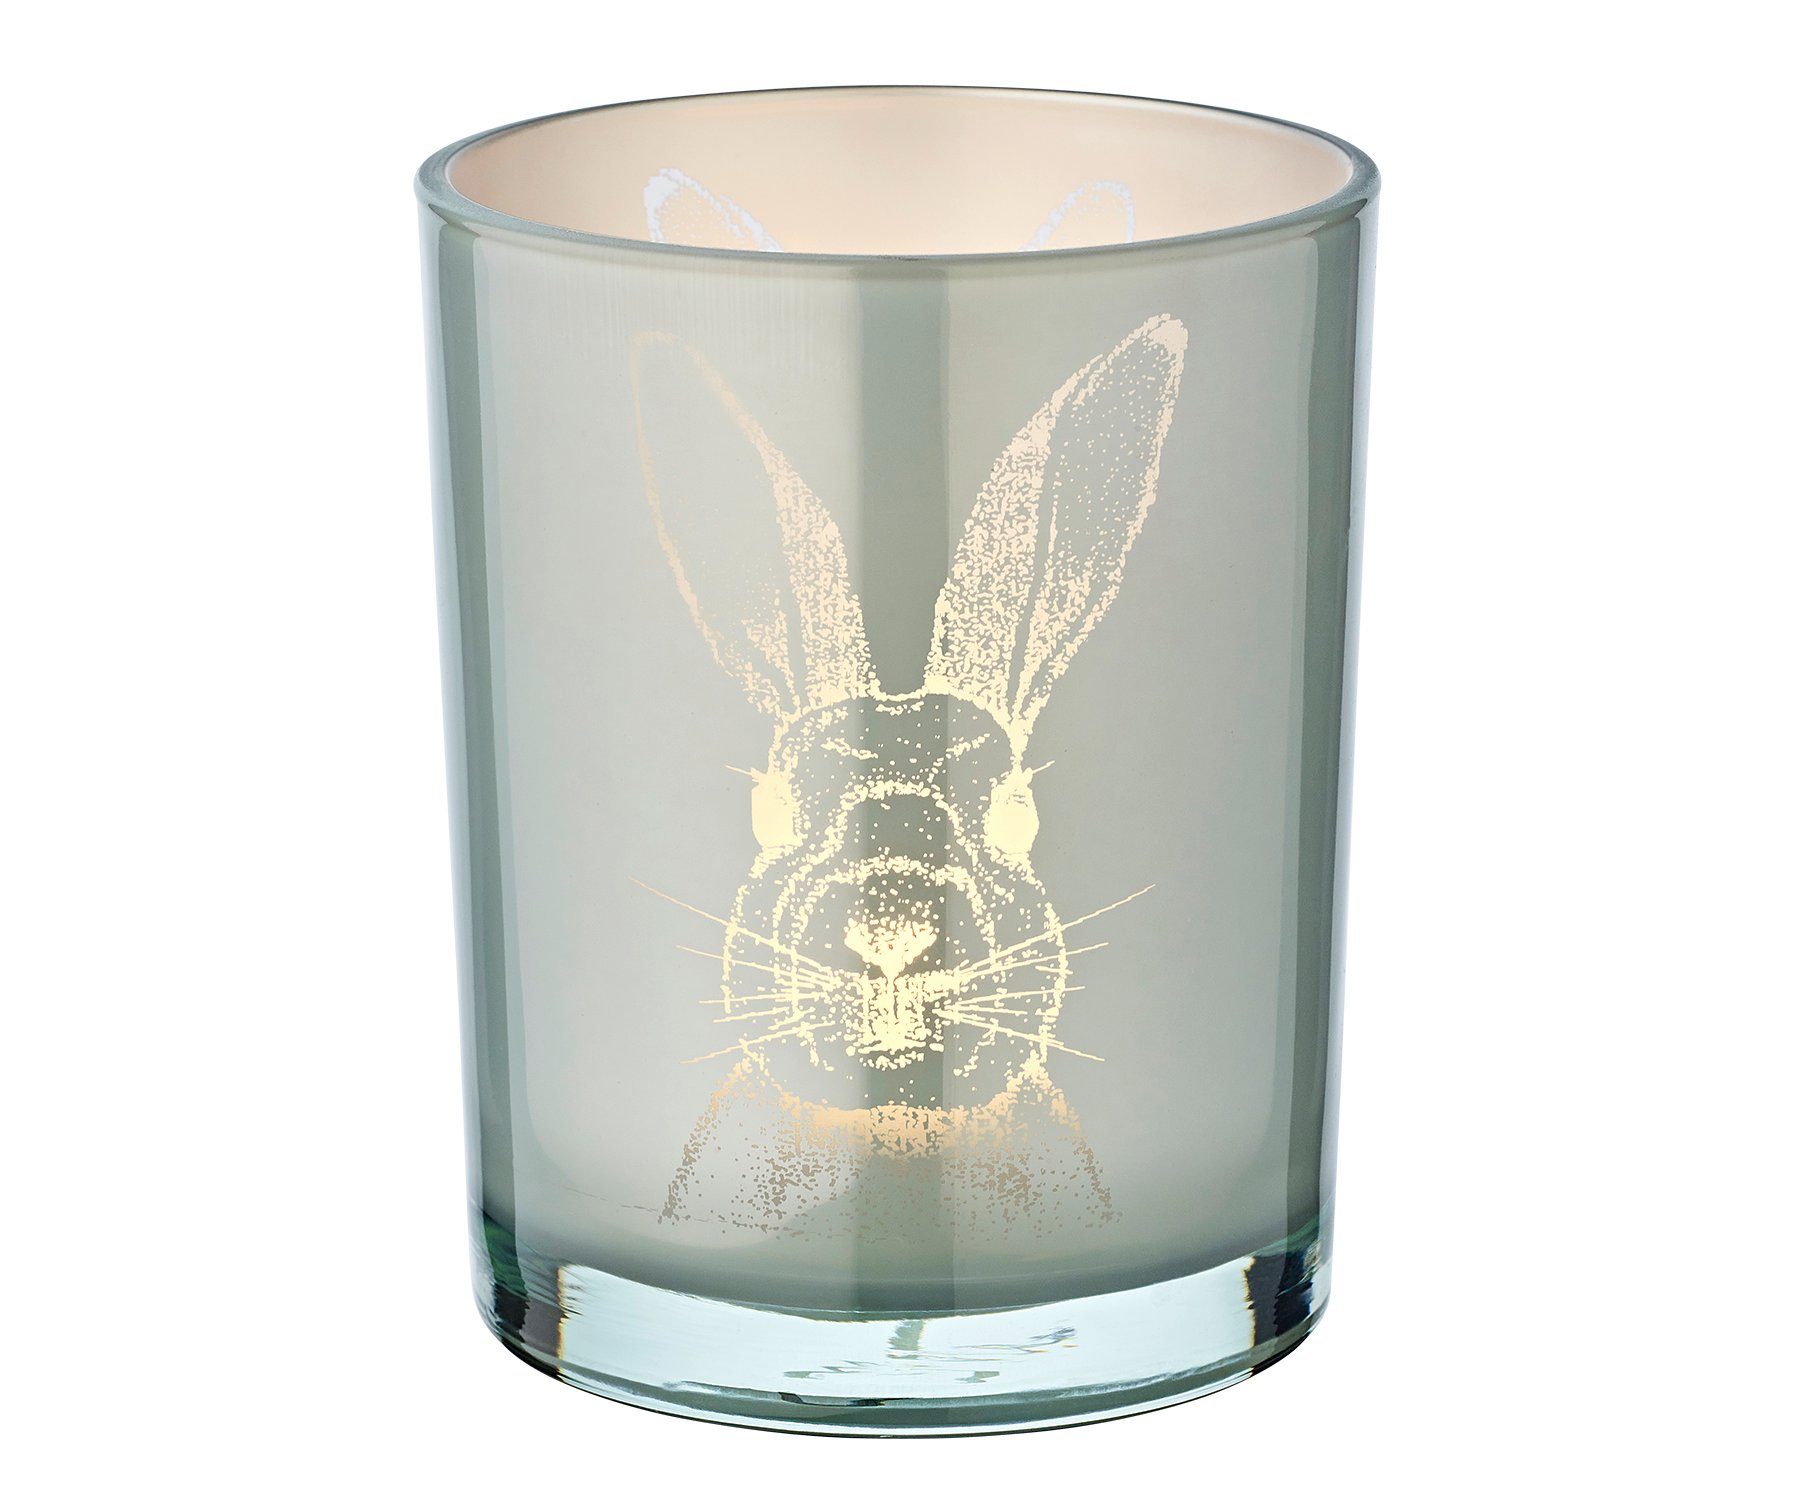 EDZARD Windlicht Hase, Windlicht, Kerzenglas mit Hasen-Motiv in Grau-Optik, Teelichtglas für Teelichter, Höhe 13 cm, Ø 10 cm